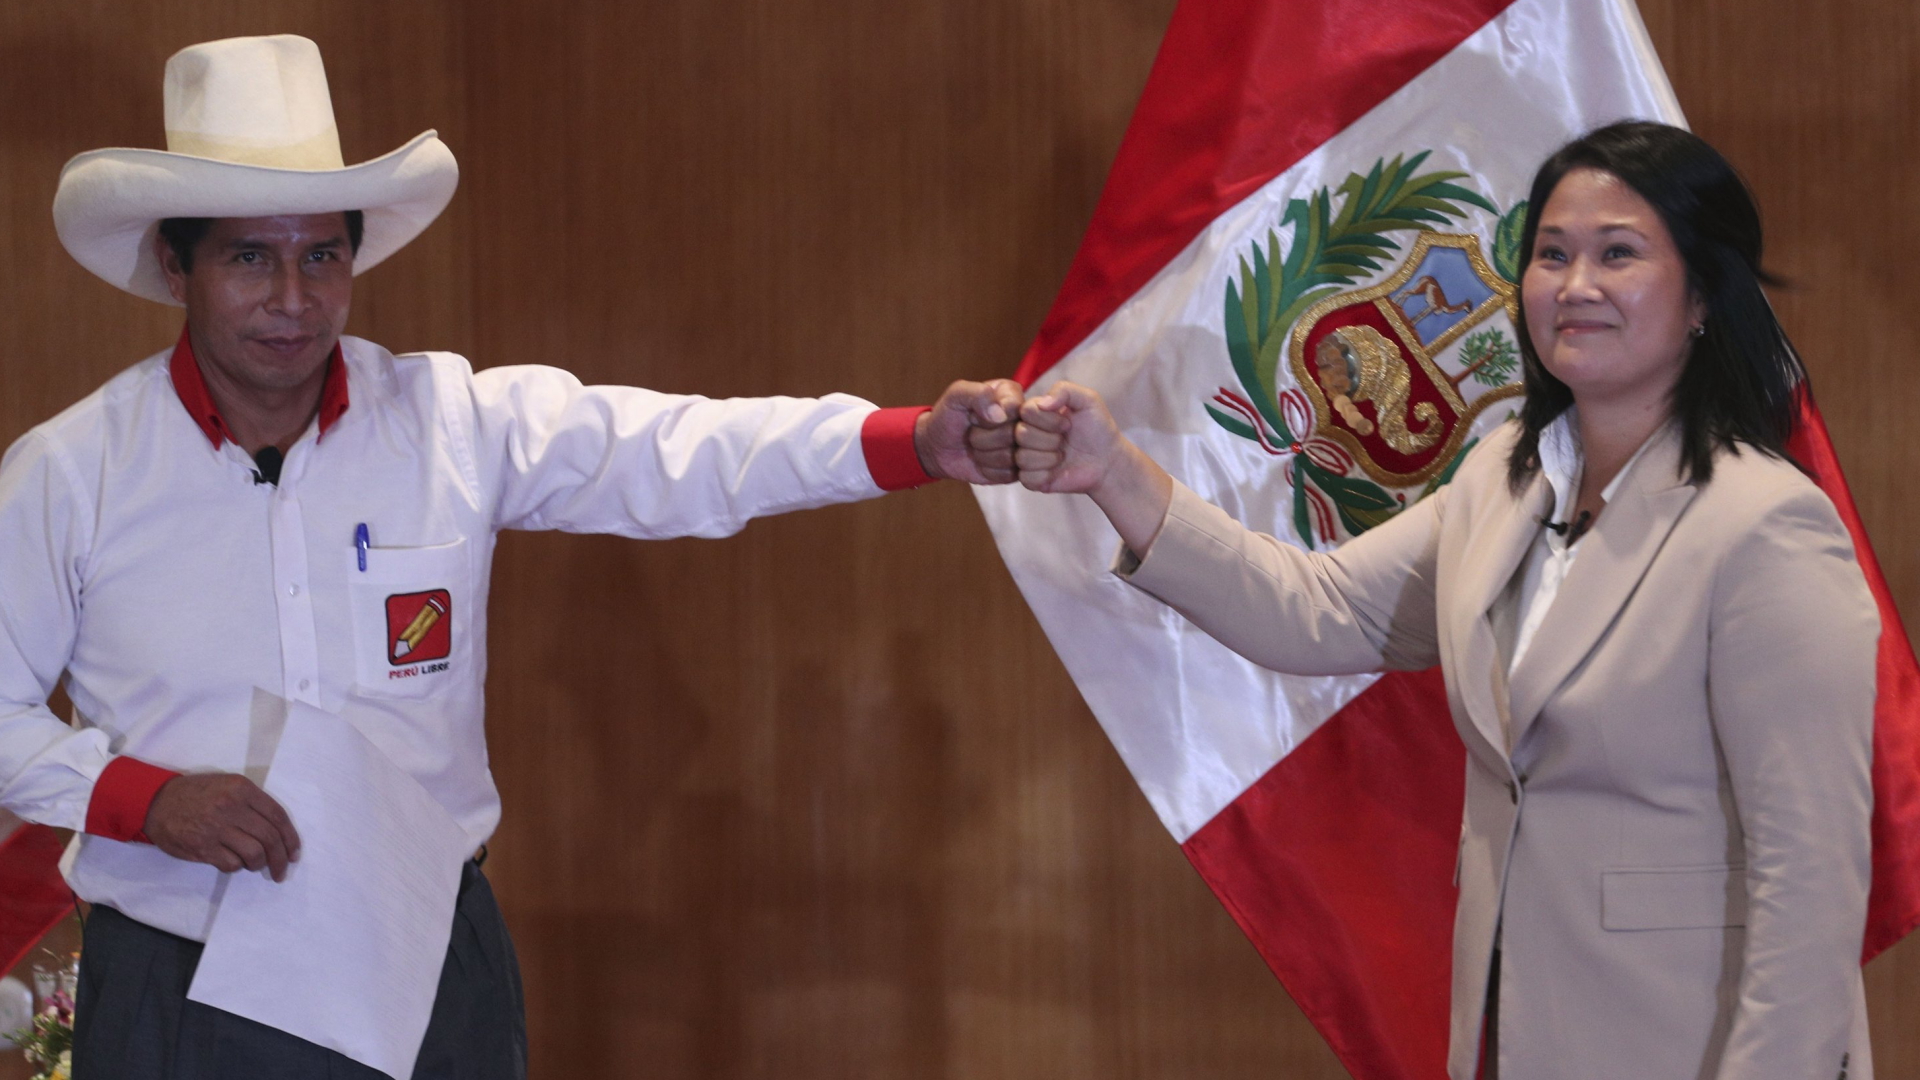 Präsidentschaftskandidaten Castillo und Fujimori begrüßen sich auf einer Wahlkampfveranstaltung in Lima (Peru) mit der Faust | AP